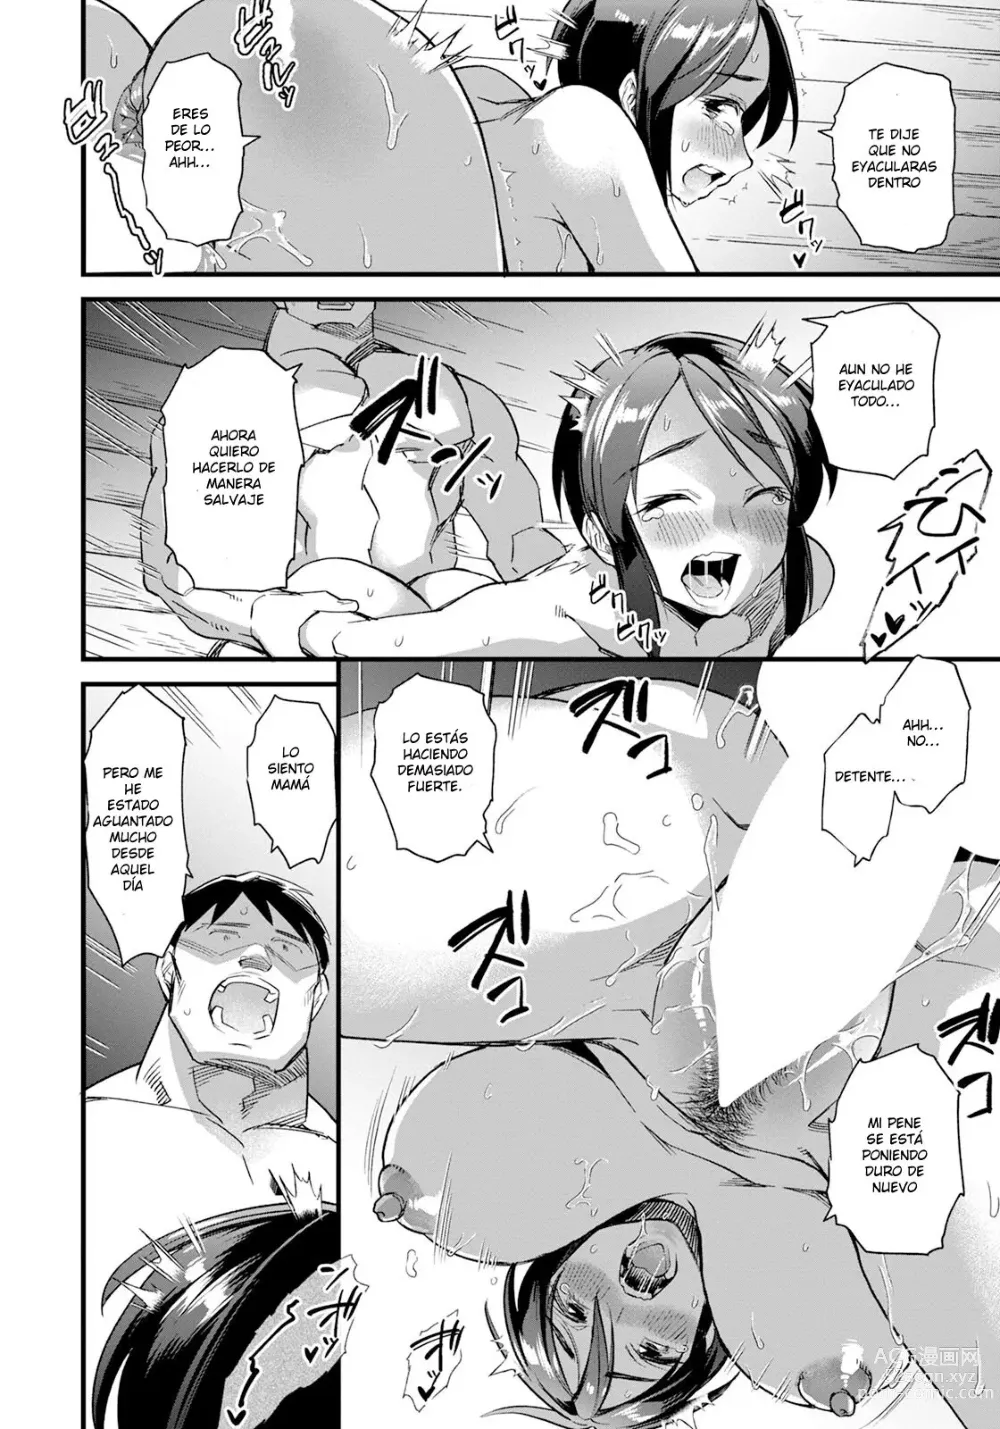 Page 14 of manga divorcio y escalada de montaña